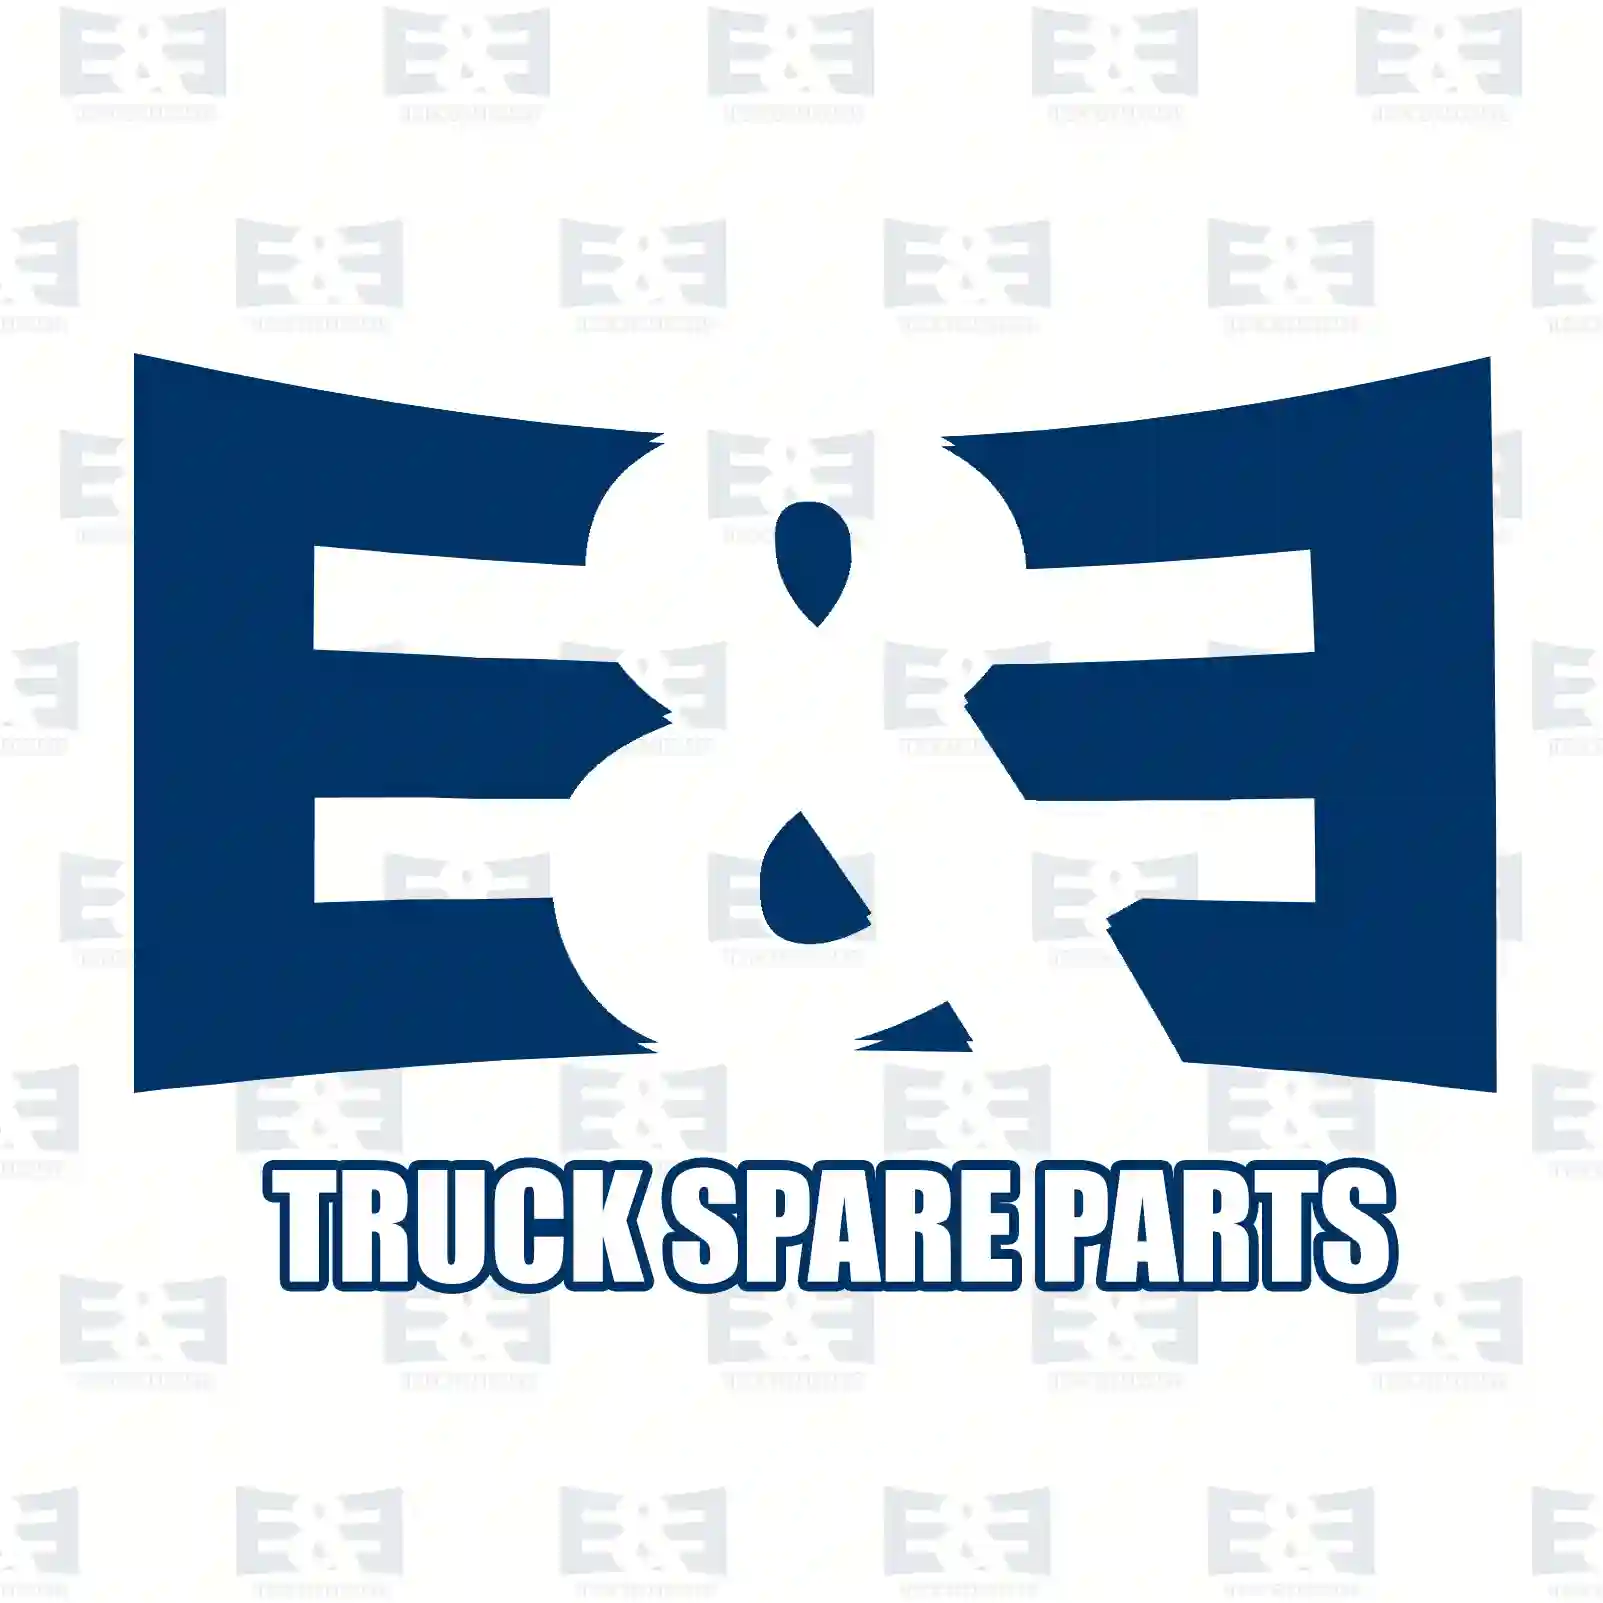 Multiribbed belt, 2E2286313, 1132641, 1132642, 1332732, 1332733, 1C1Q-6C301-AB, 1C1Q-6C301-AD, 1C1Q-6D314-AA, 1C1Q-6D314-AB, 1C1Q-6D314-BA, 1C1Q-6D314-BB ||  2E2286313 E&E Truck Spare Parts | Truck Spare Parts, Auotomotive Spare Parts Multiribbed belt, 2E2286313, 1132641, 1132642, 1332732, 1332733, 1C1Q-6C301-AB, 1C1Q-6C301-AD, 1C1Q-6D314-AA, 1C1Q-6D314-AB, 1C1Q-6D314-BA, 1C1Q-6D314-BB ||  2E2286313 E&E Truck Spare Parts | Truck Spare Parts, Auotomotive Spare Parts